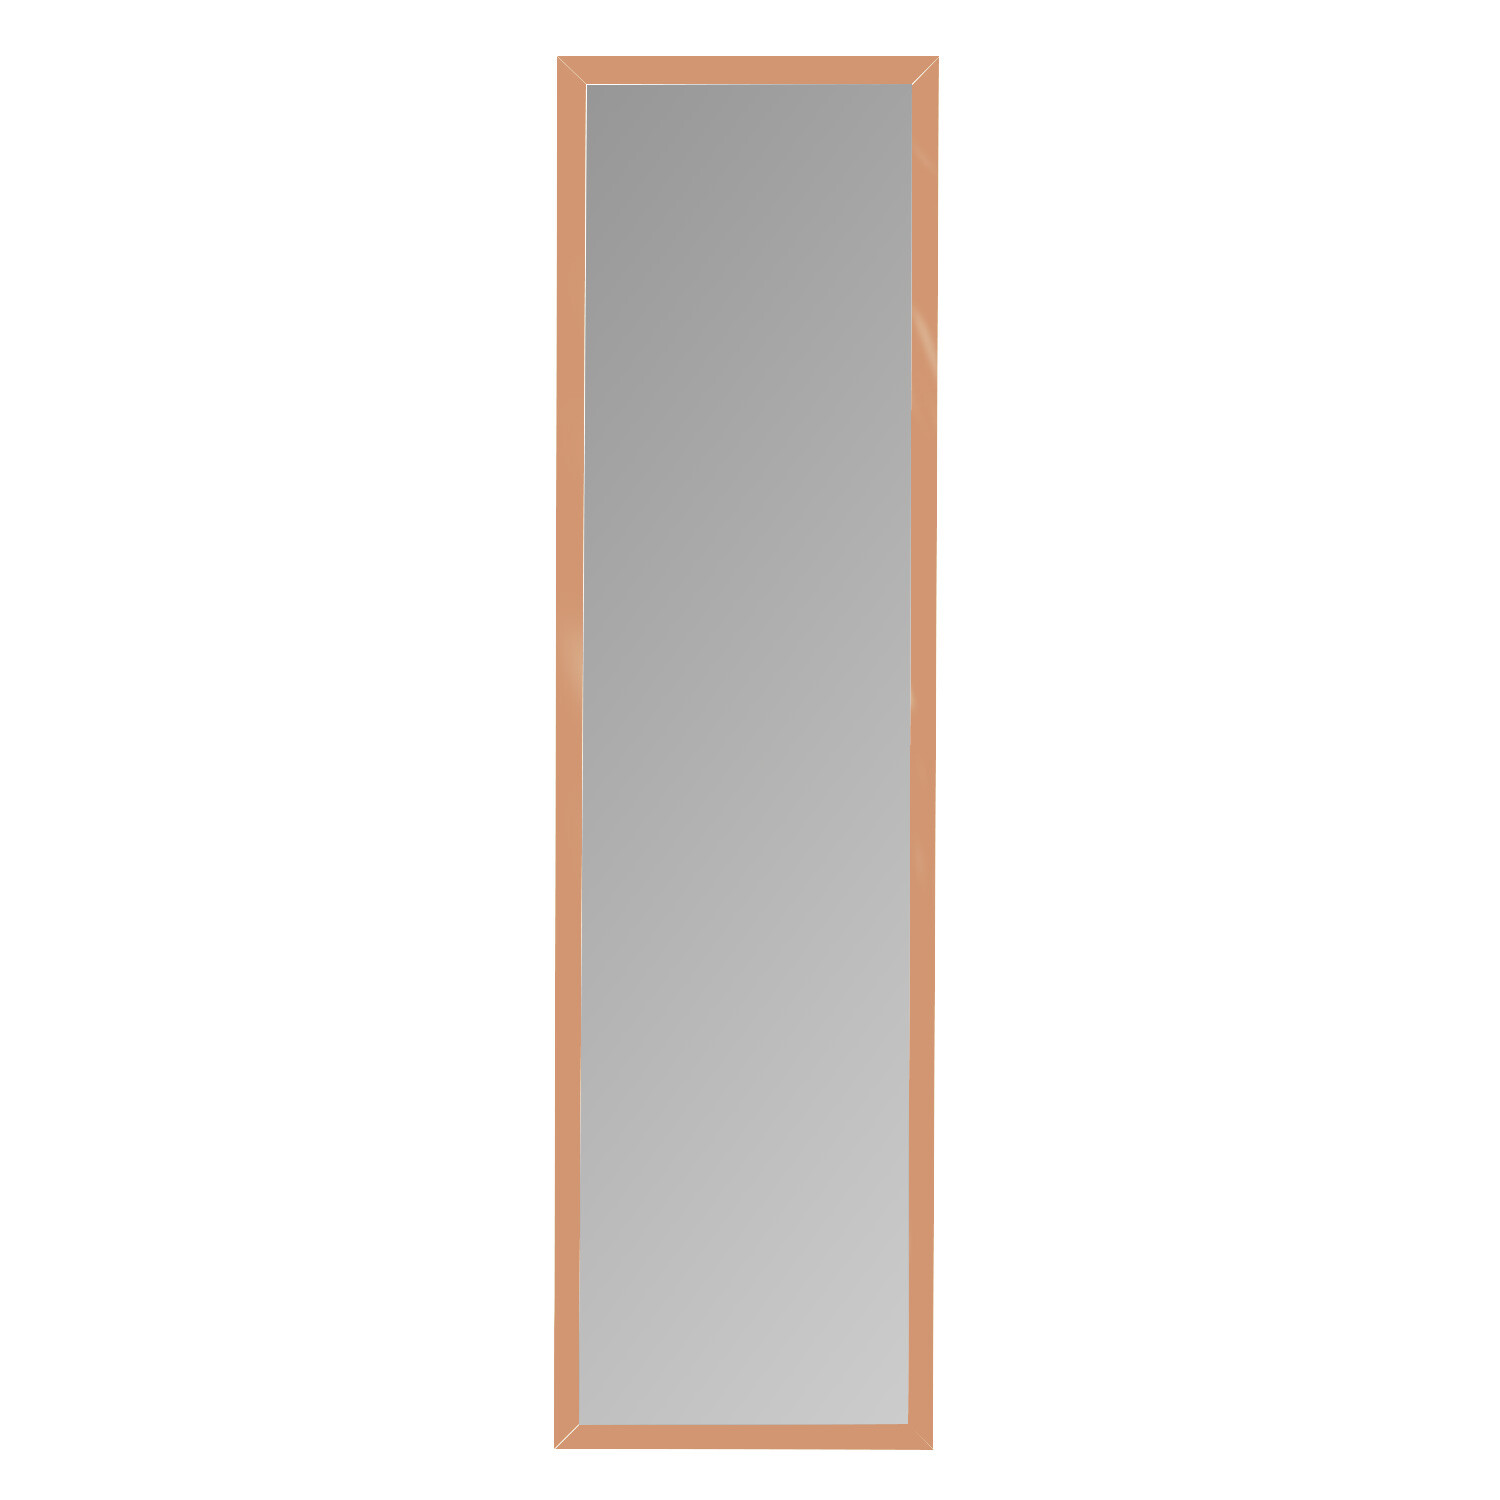 Single Metallic Over Door Mirror 123.8 x 33.8cm in Assorted styles Image 3